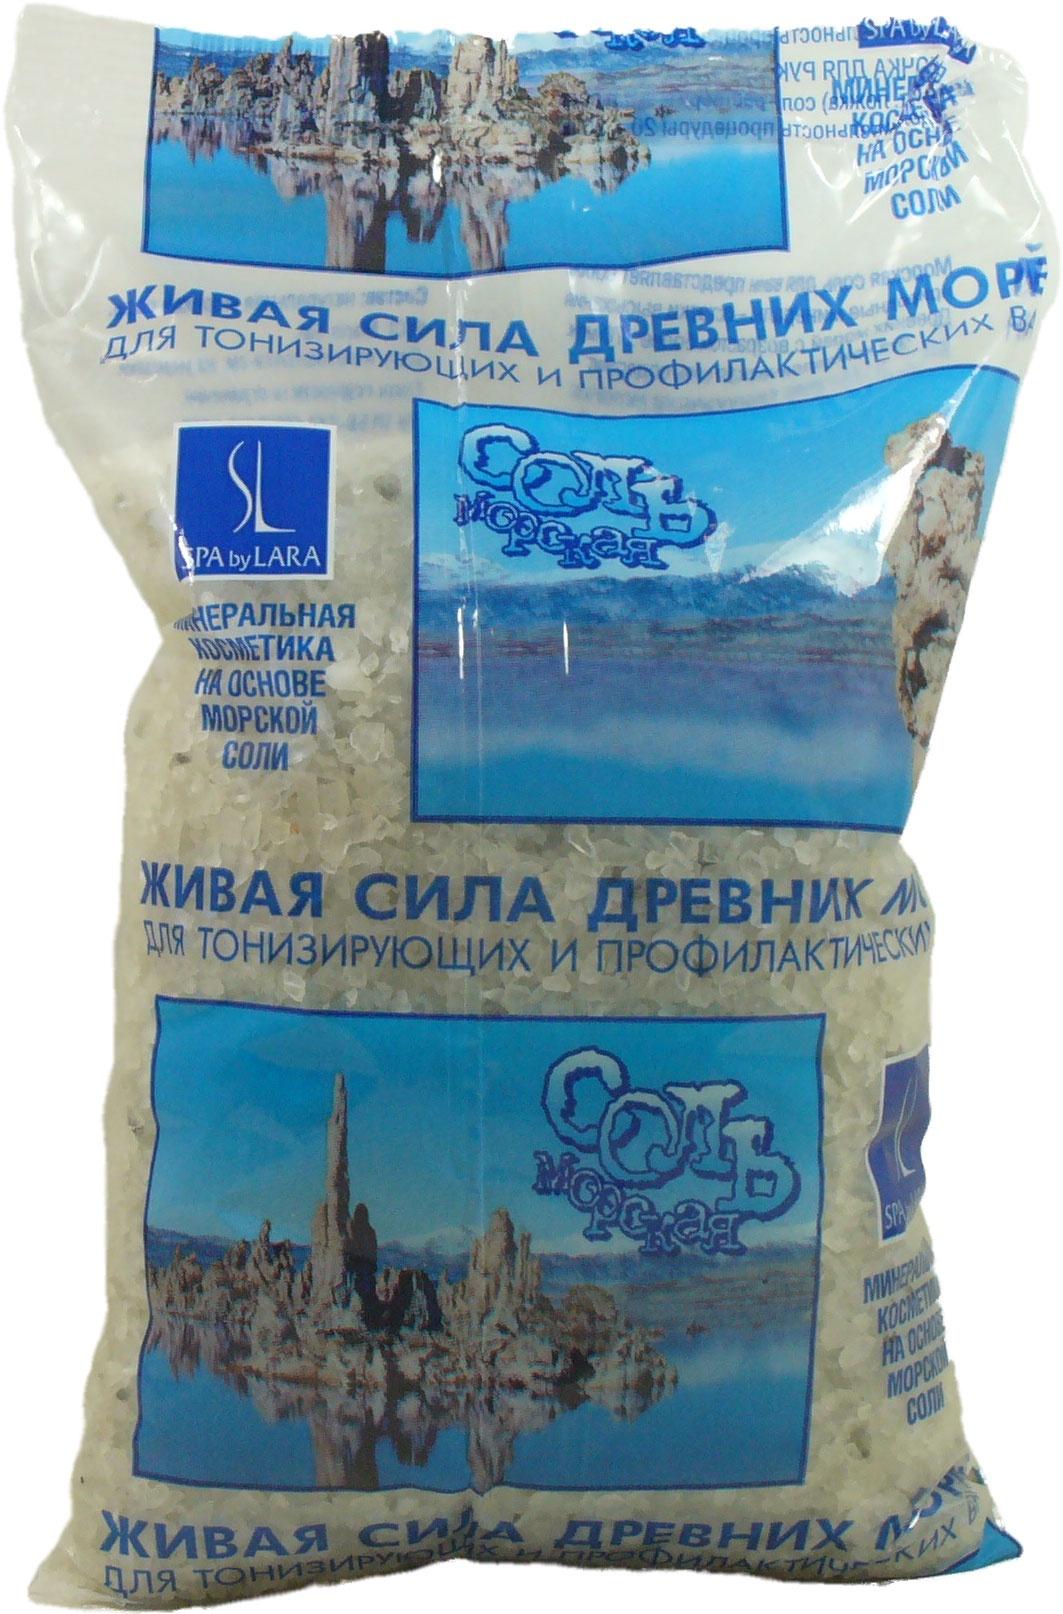 Соль для ванн Spa by Lara Морская натуральная 1 кг., флоу-пак